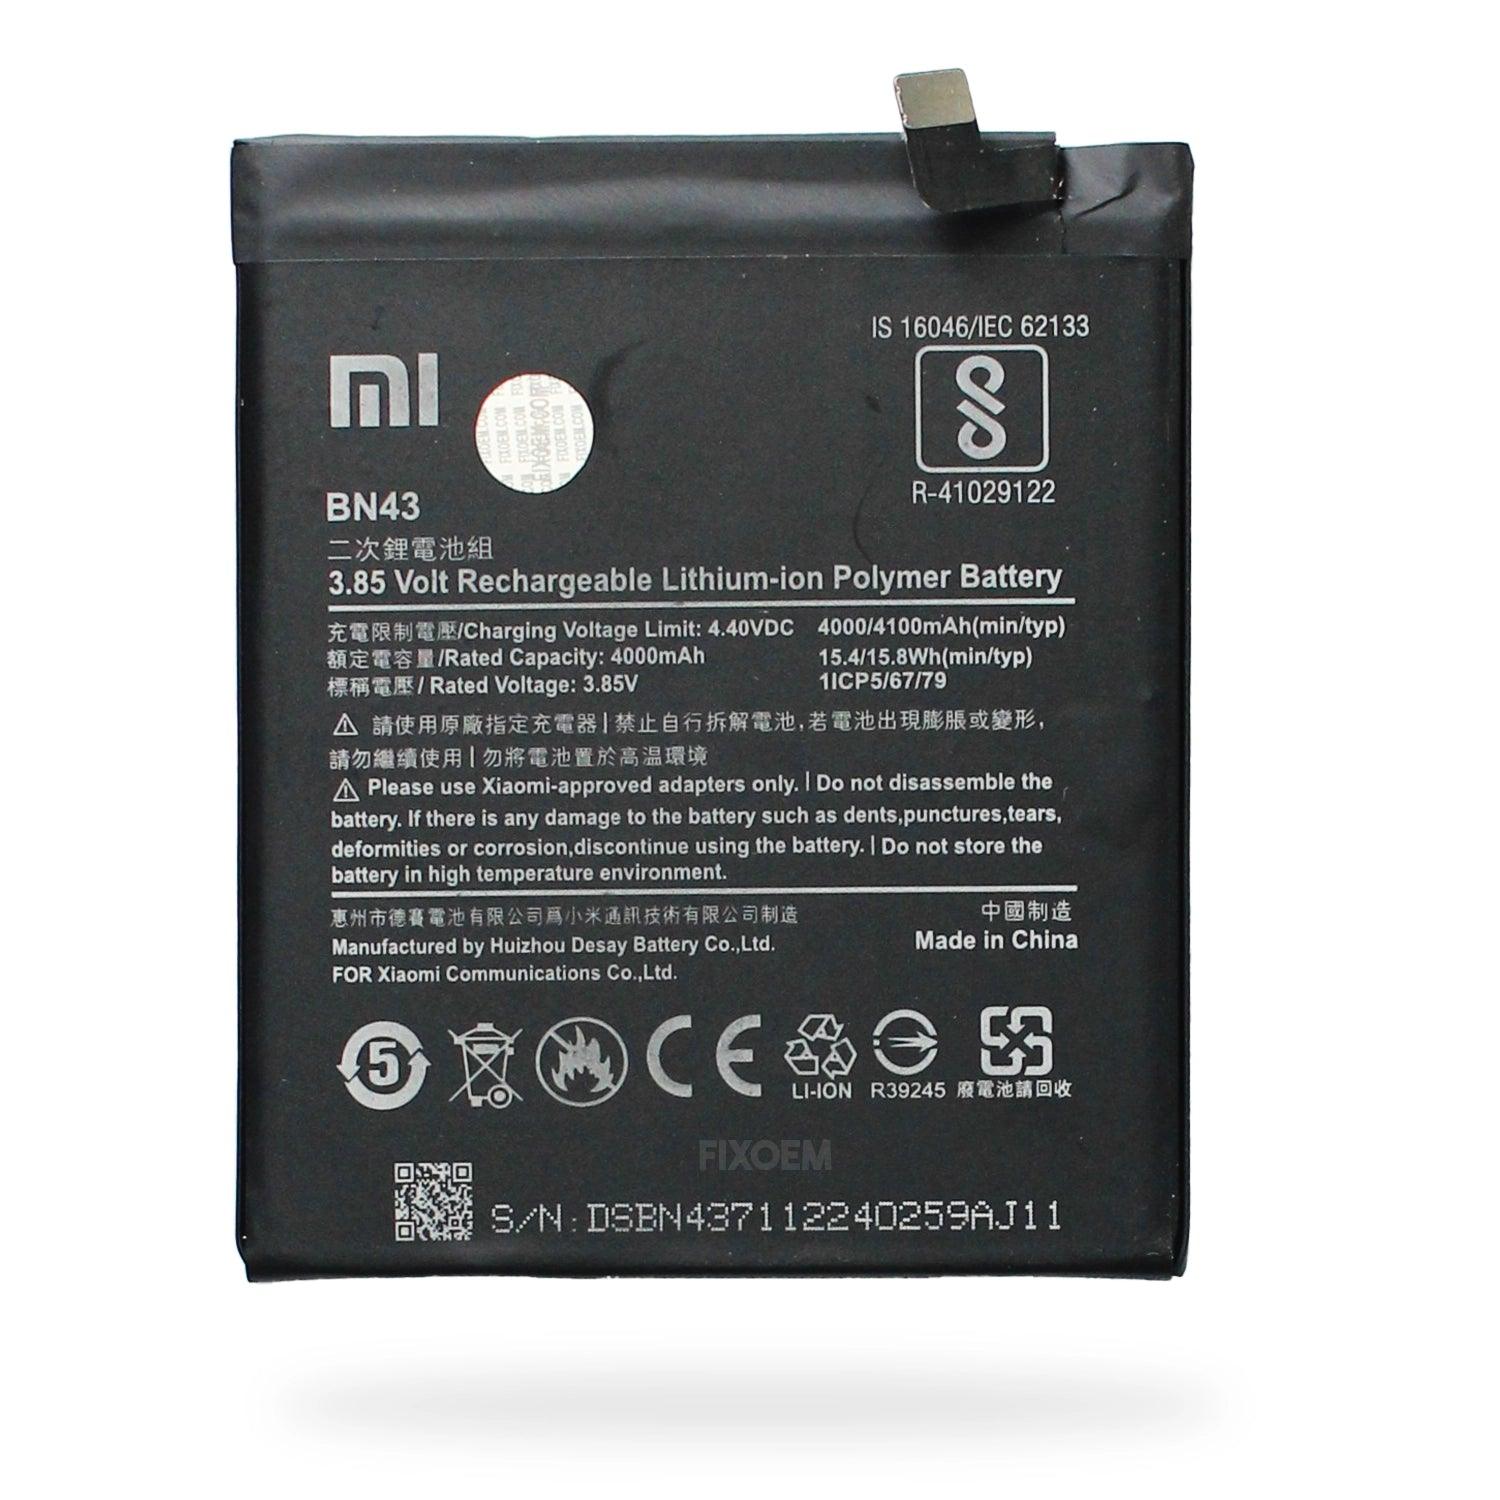 Bateria Xiaomi Redmi Note 4X Bn43 a solo $ 170.00 Refaccion y puestos celulares, refurbish y microelectronica.- FixOEM